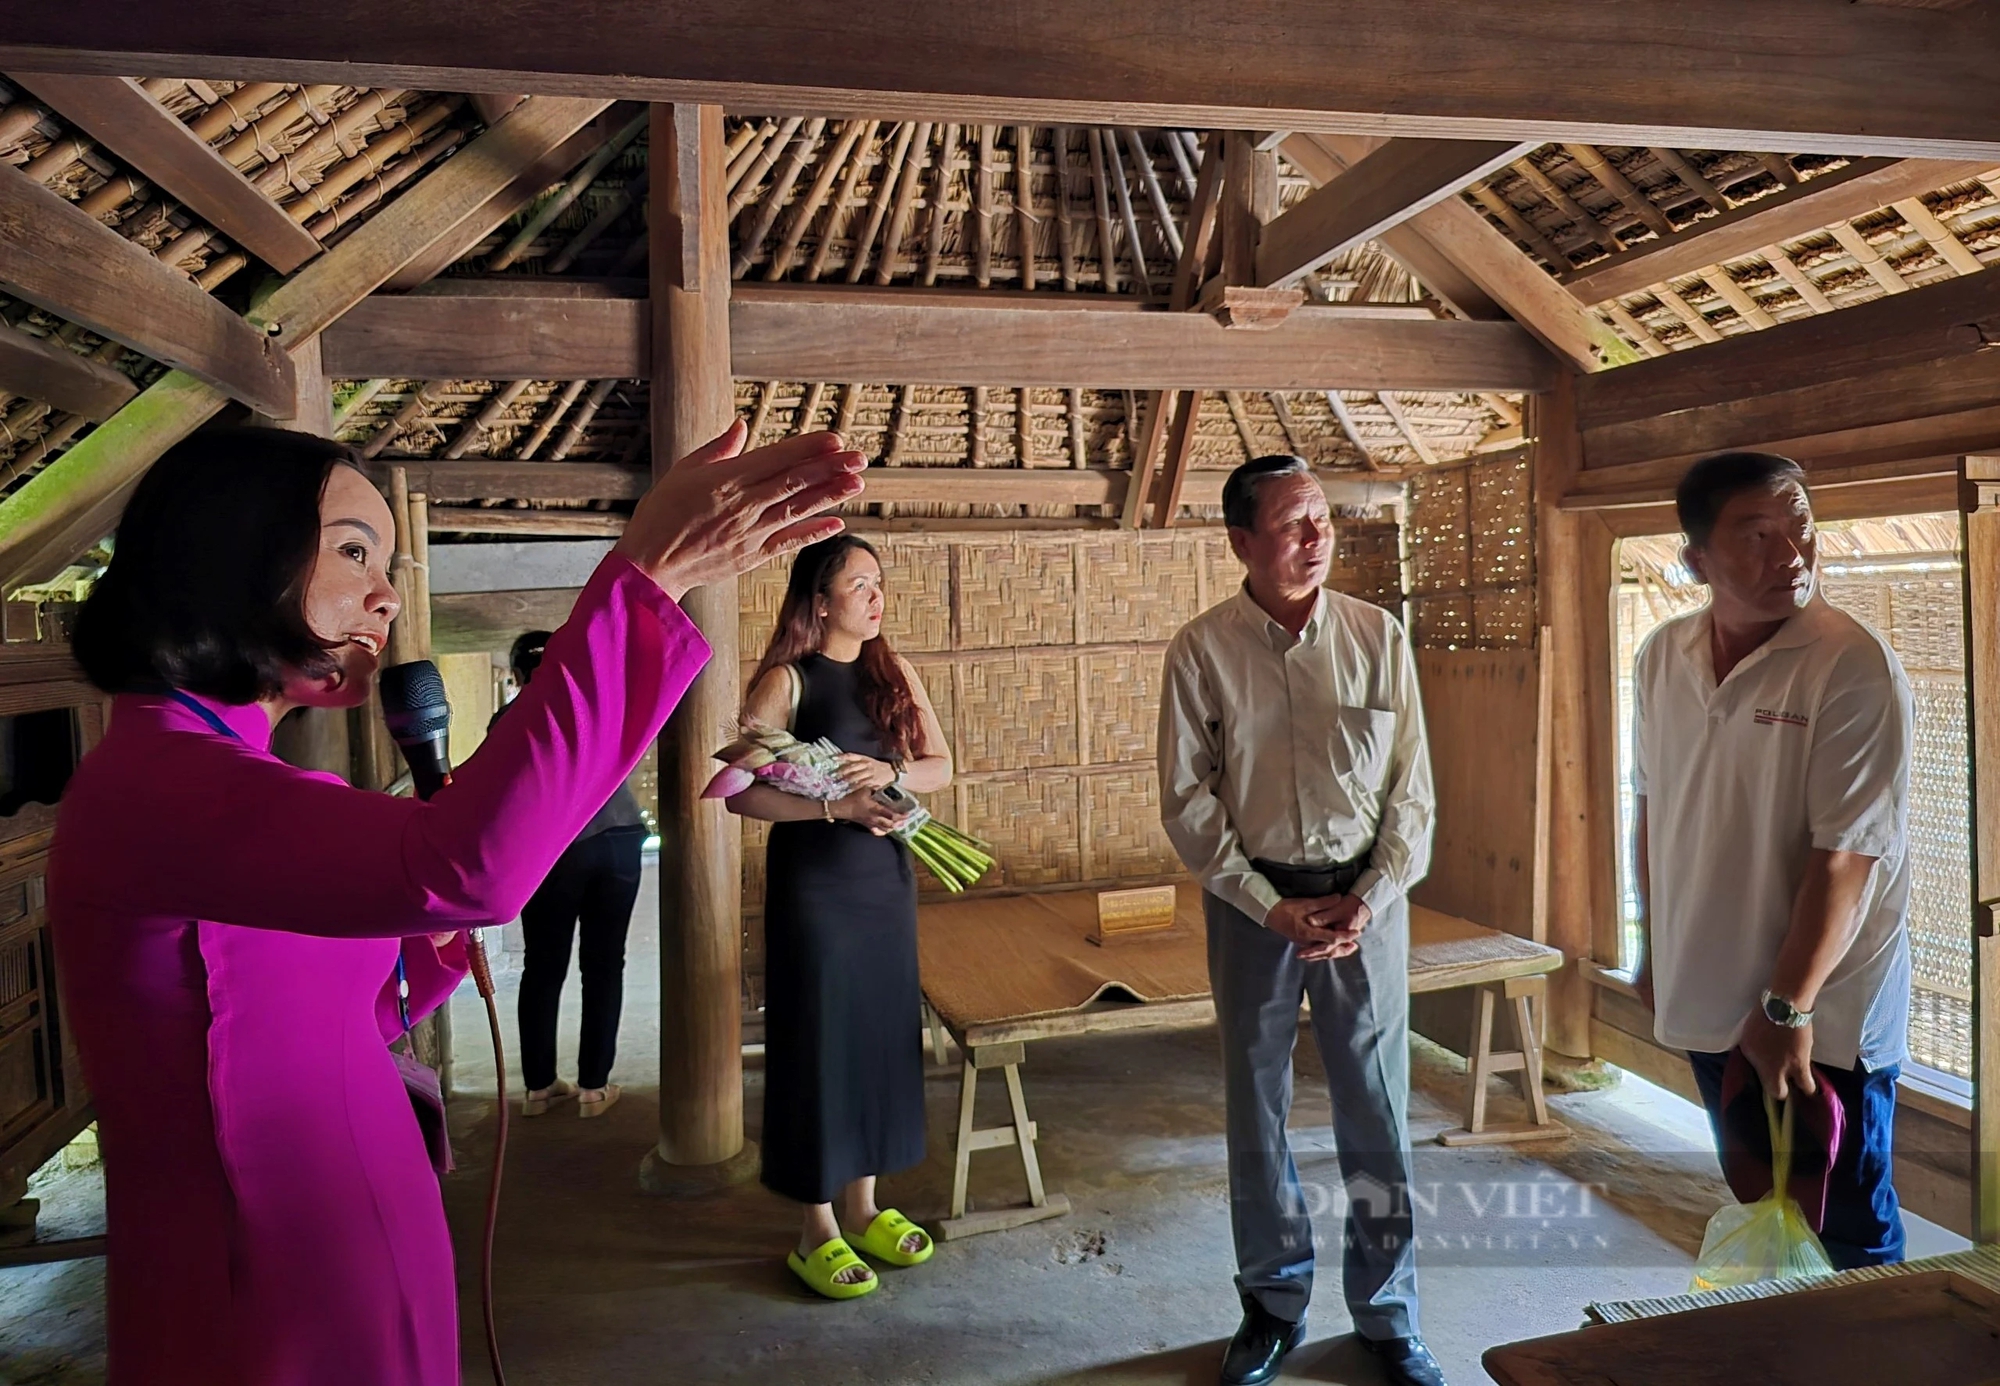 Tháng 5 thăm Làng Sen, gặp những người kể về Bác Hồ bằng giọng Nghệ ngọt ngào- Ảnh 3.